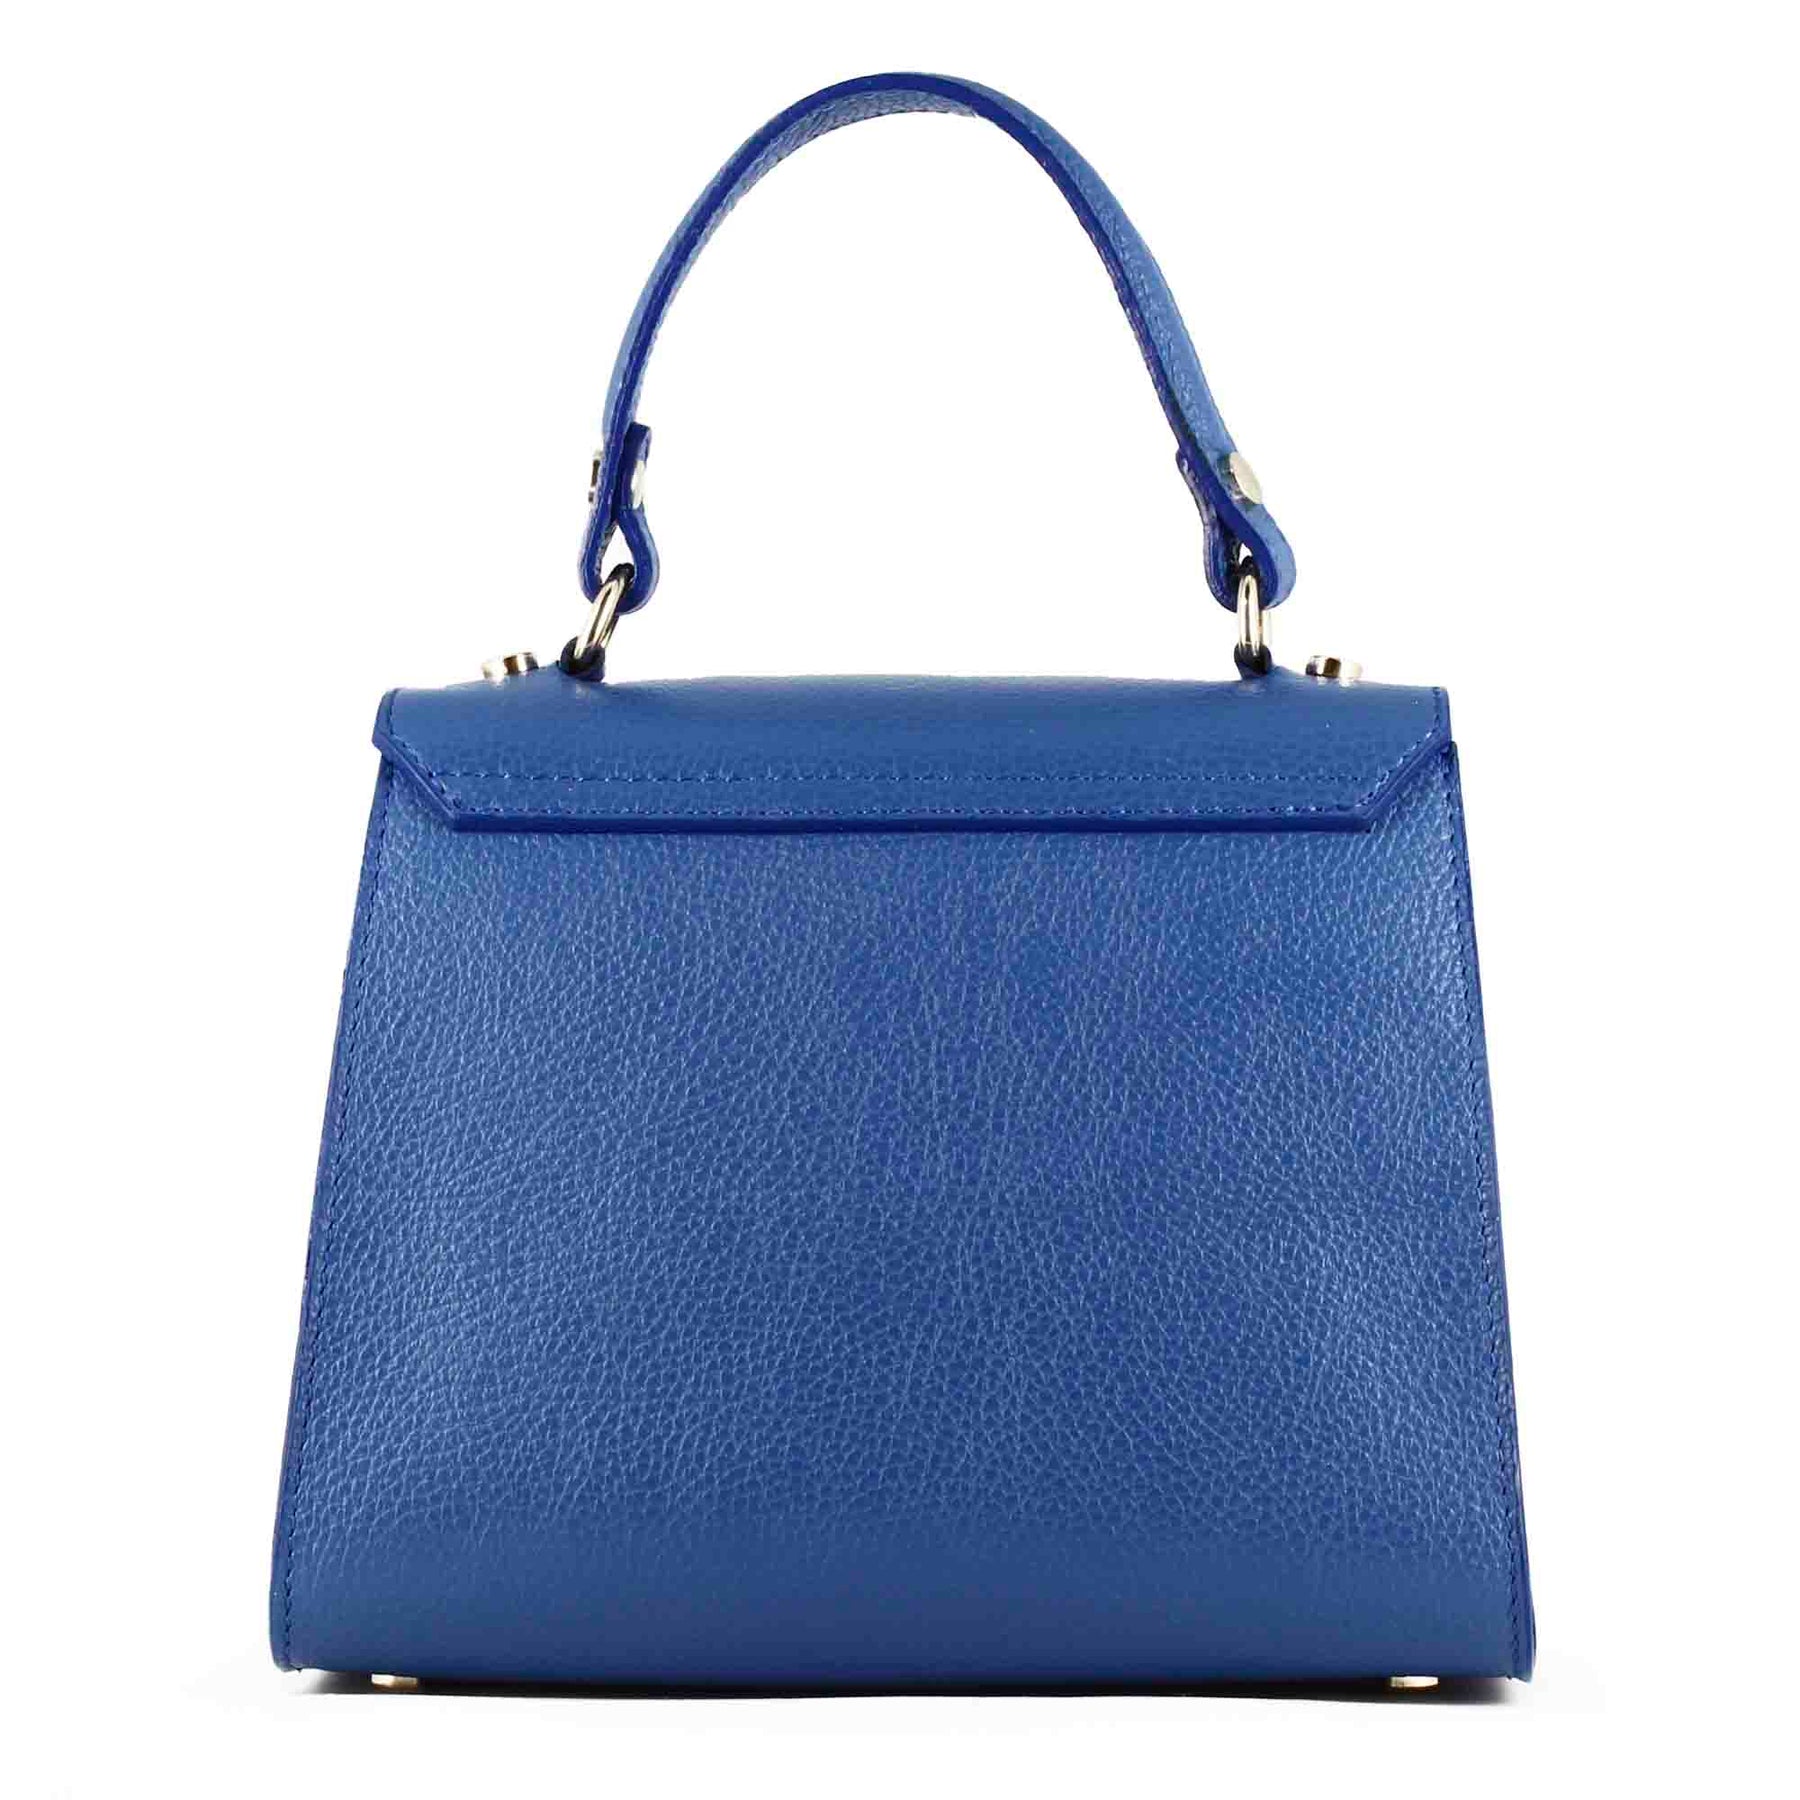 Lady K women's handbag in blue leather